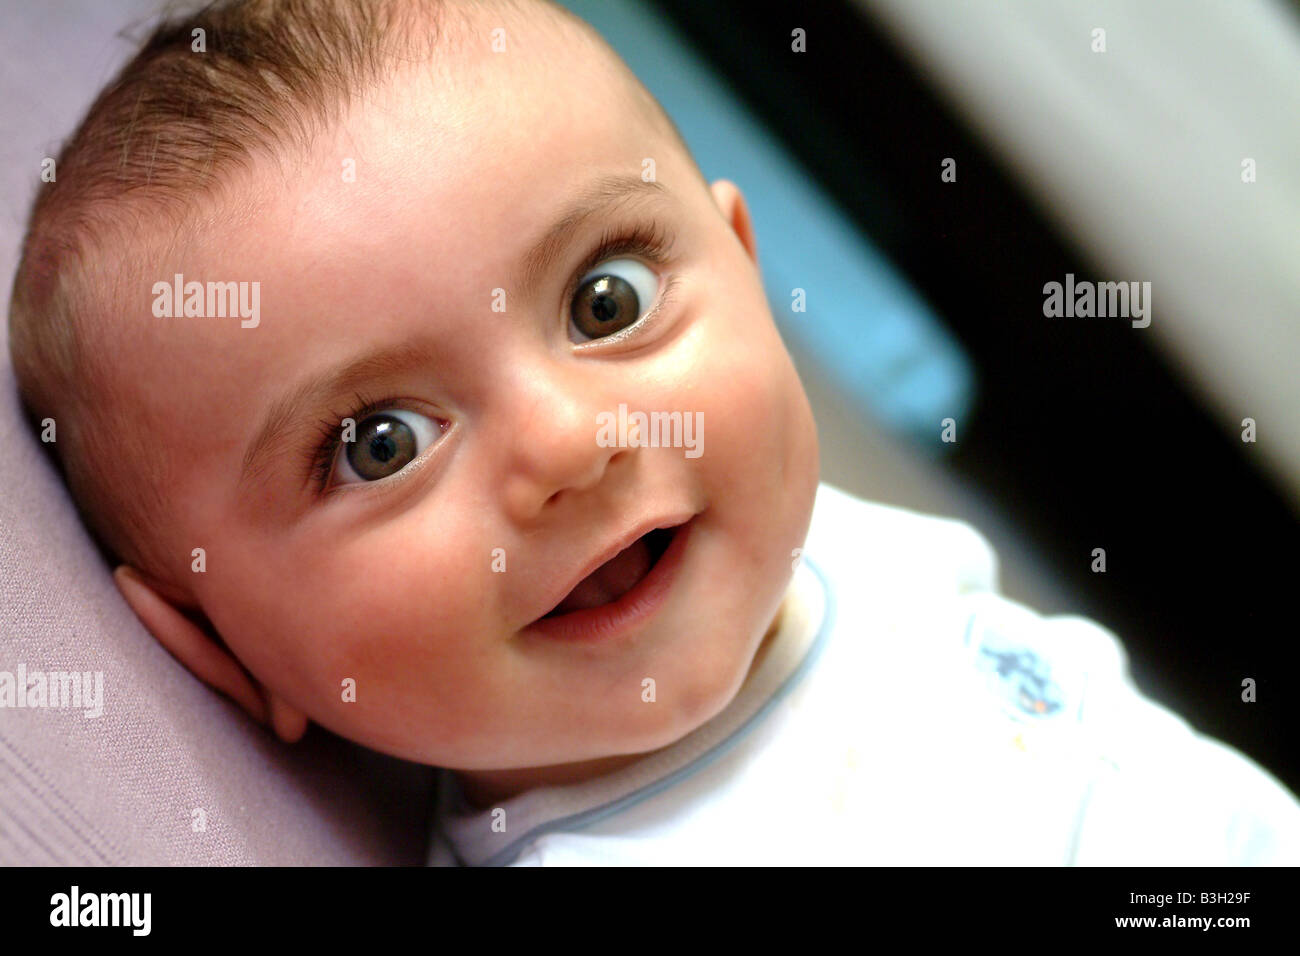 Un adorable bebe Niño sonriendo Foto de stock